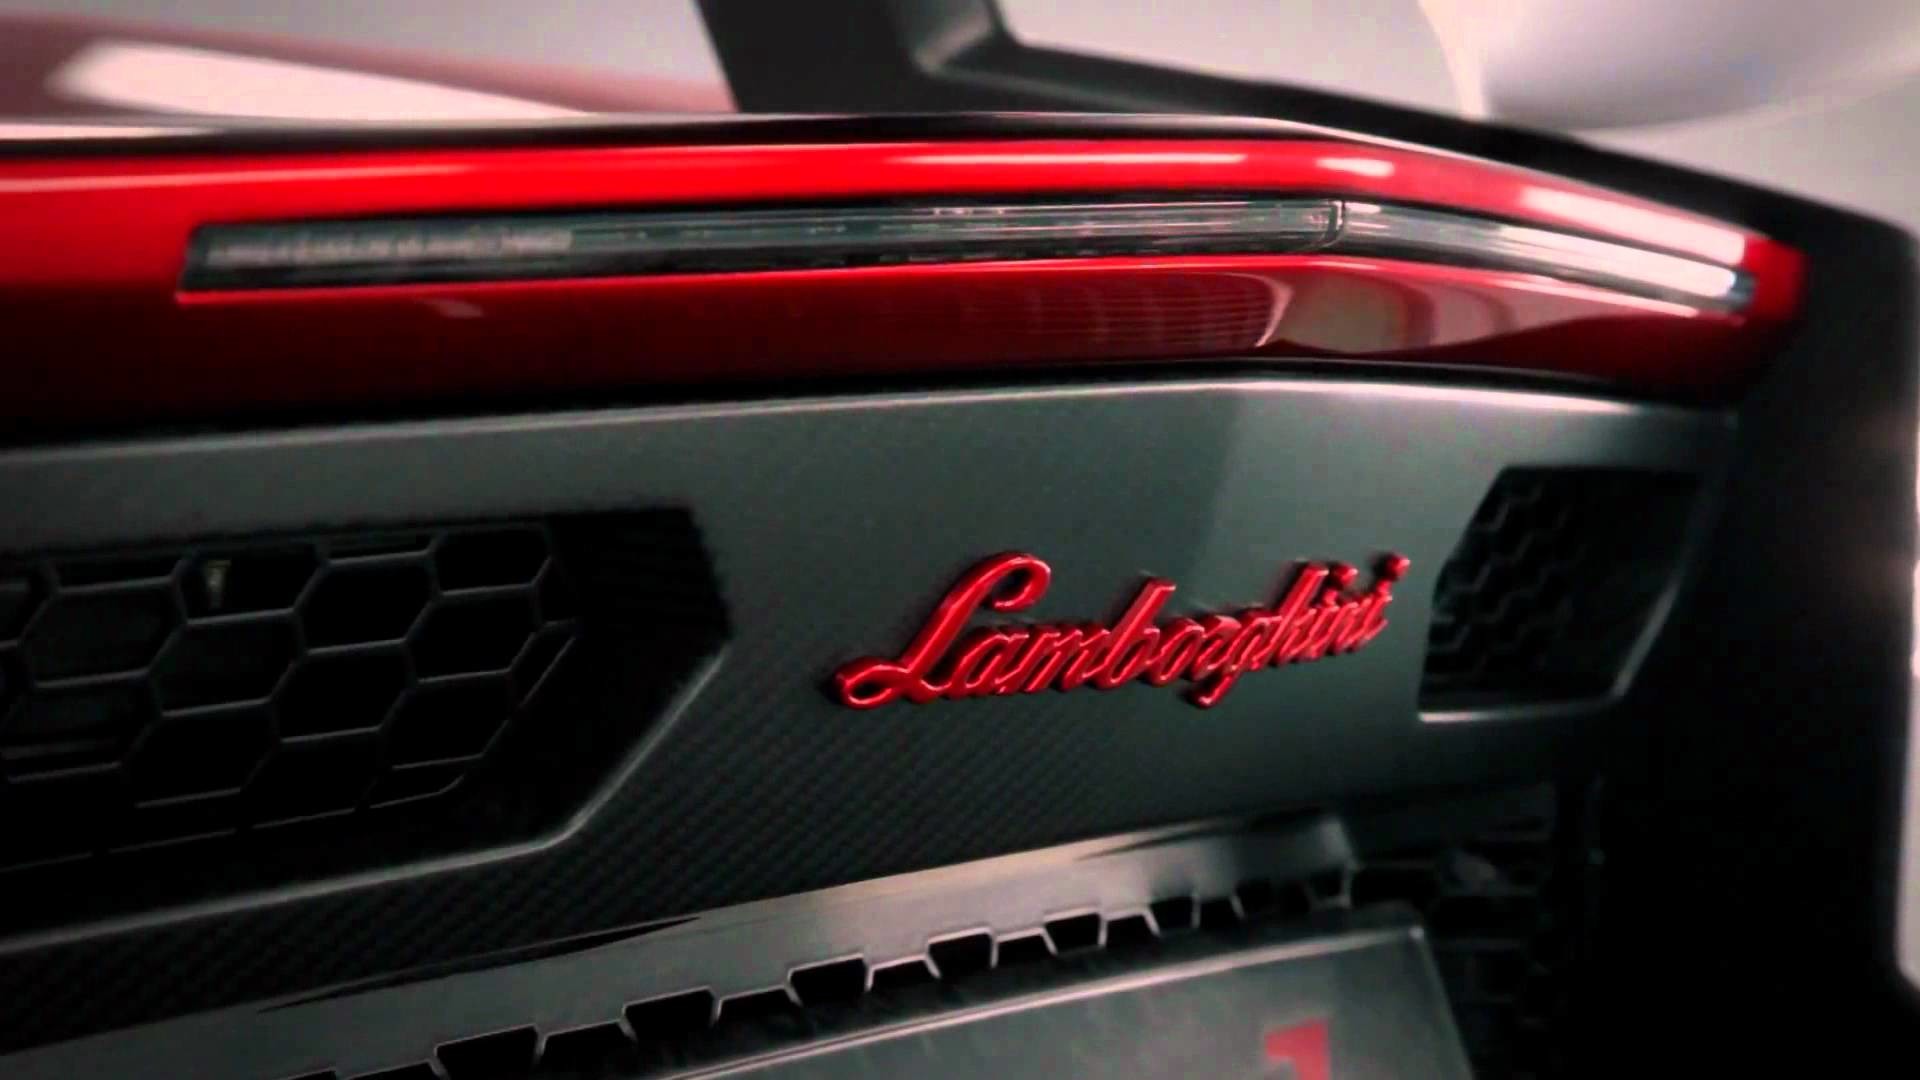 Full Hd Wallpaper Of Lamborghini